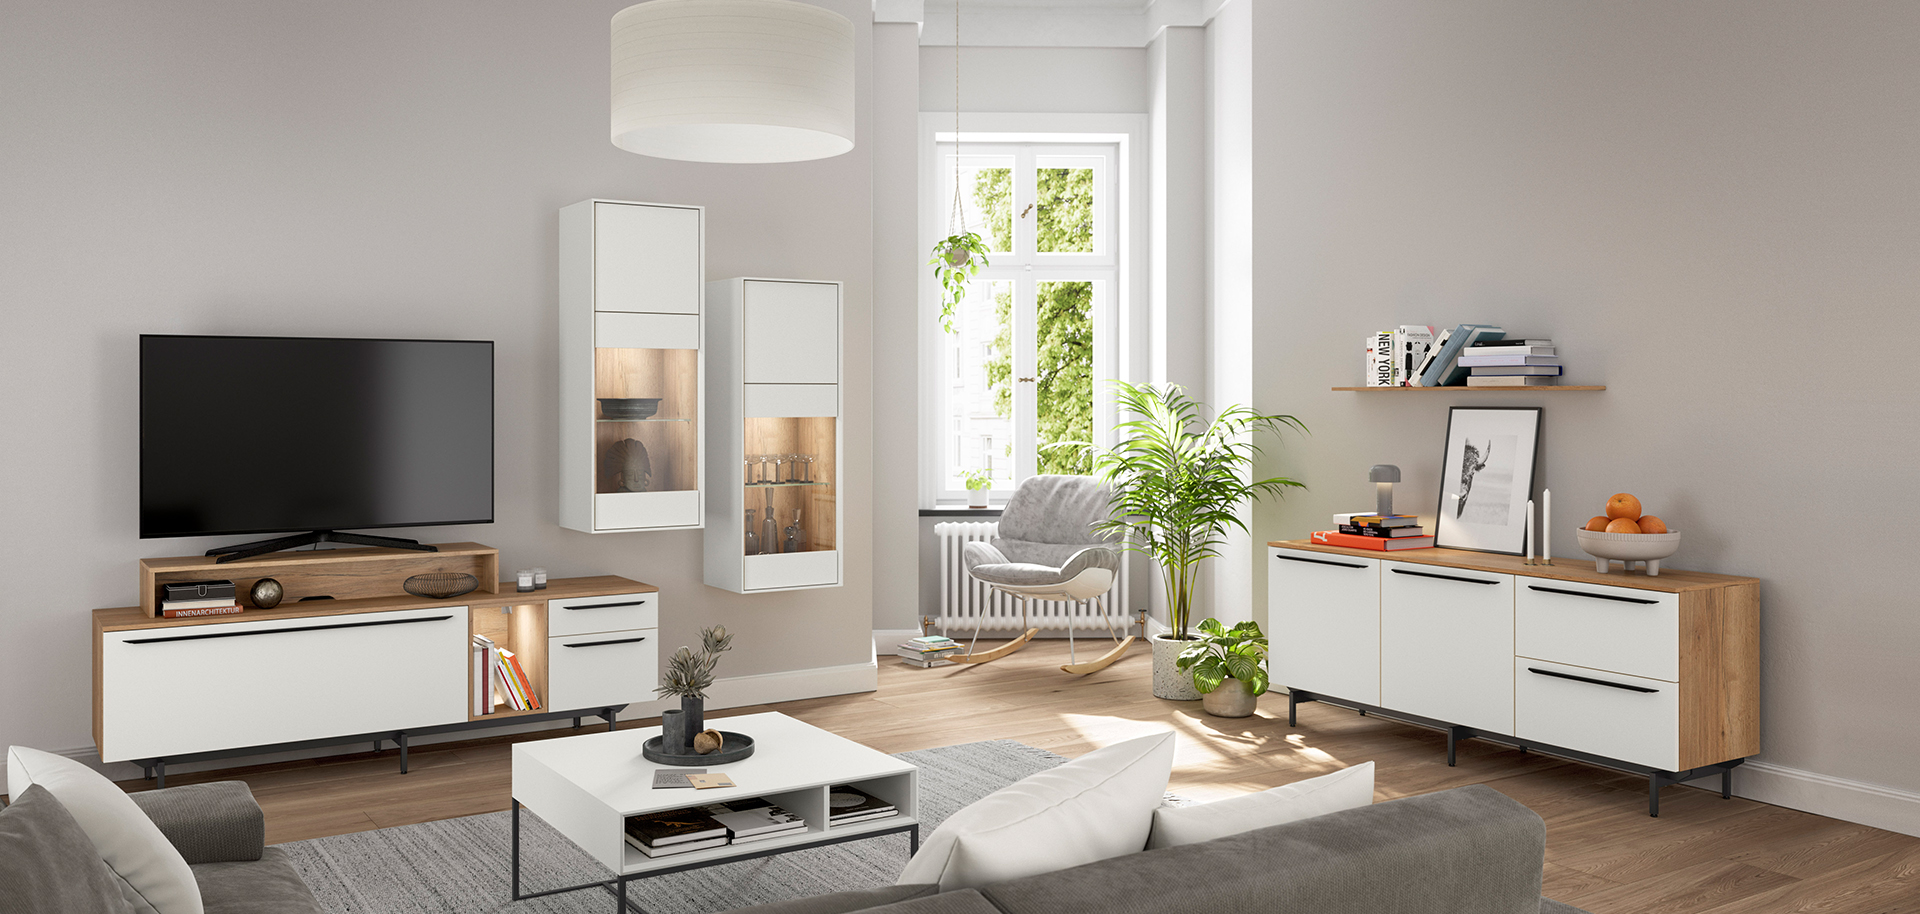 Zeitgemäßes Wohnzimmer mit eleganten Möbeln, grünen Pflanzen und natürlichem Licht, das eine ruhige und moderne Atmosphäre ausstrahlt.